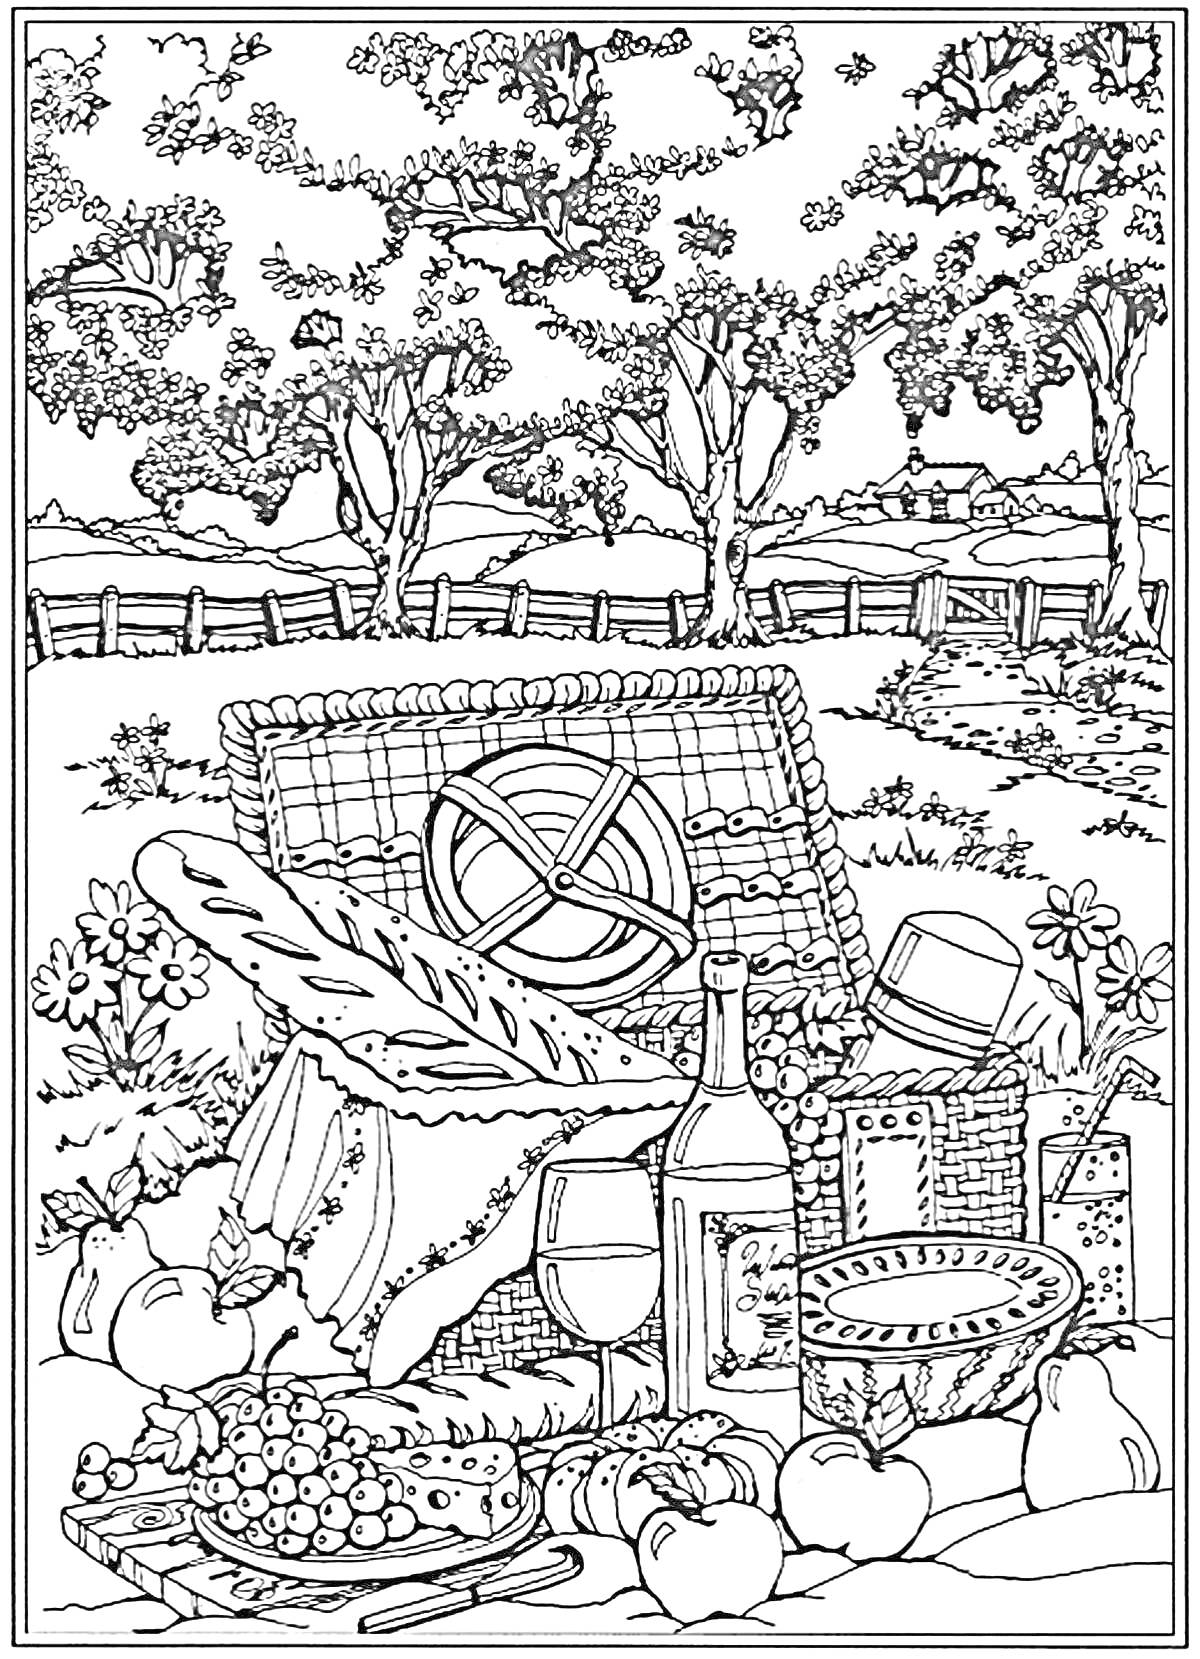 Раскраска Пикник на природе с корзиной, бутылкой вина, двумя бокалами, фруктами, сыром, багетом и деревьями